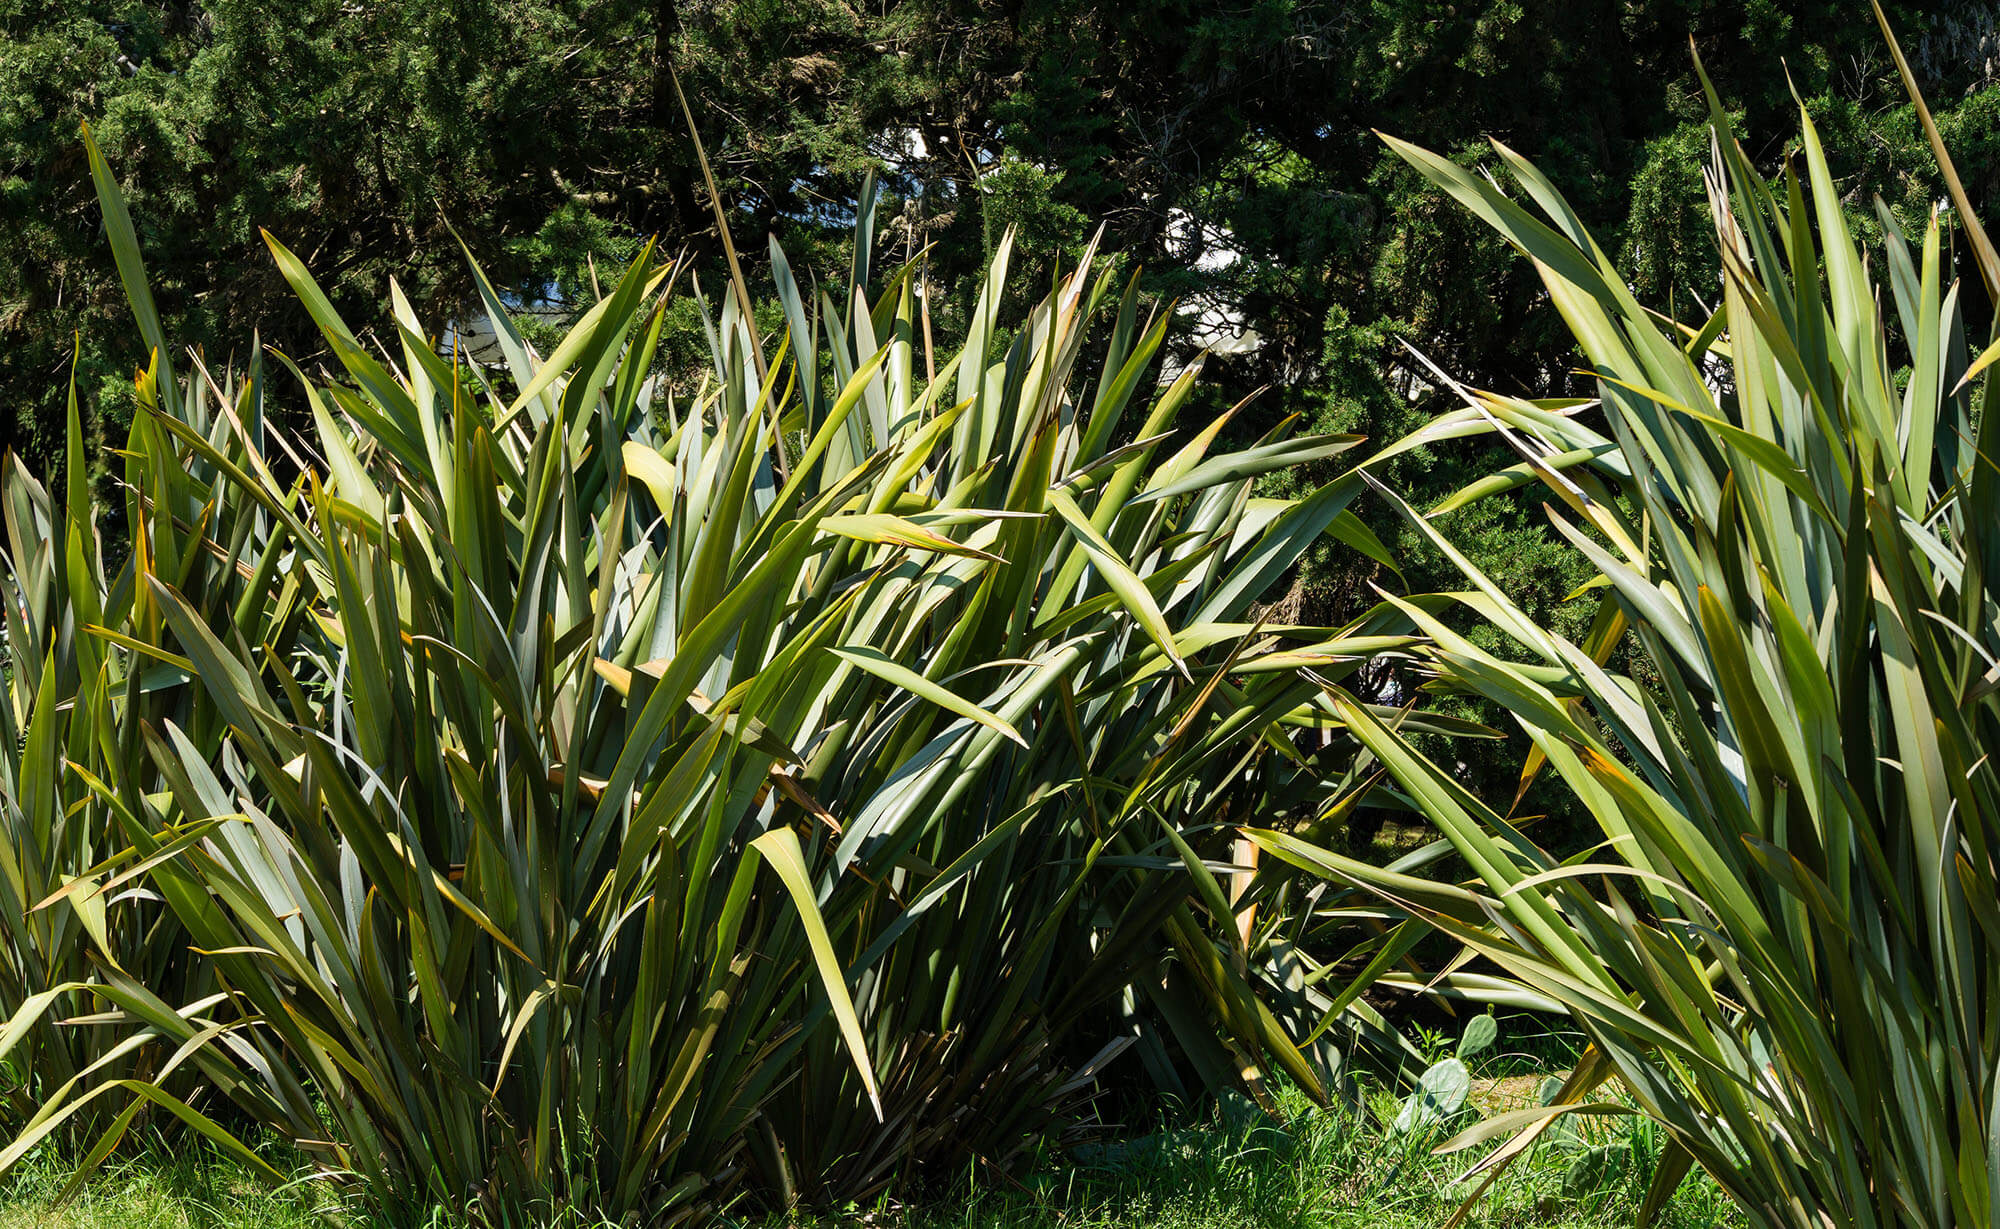 New Zealand flax (Harakeke) leaves